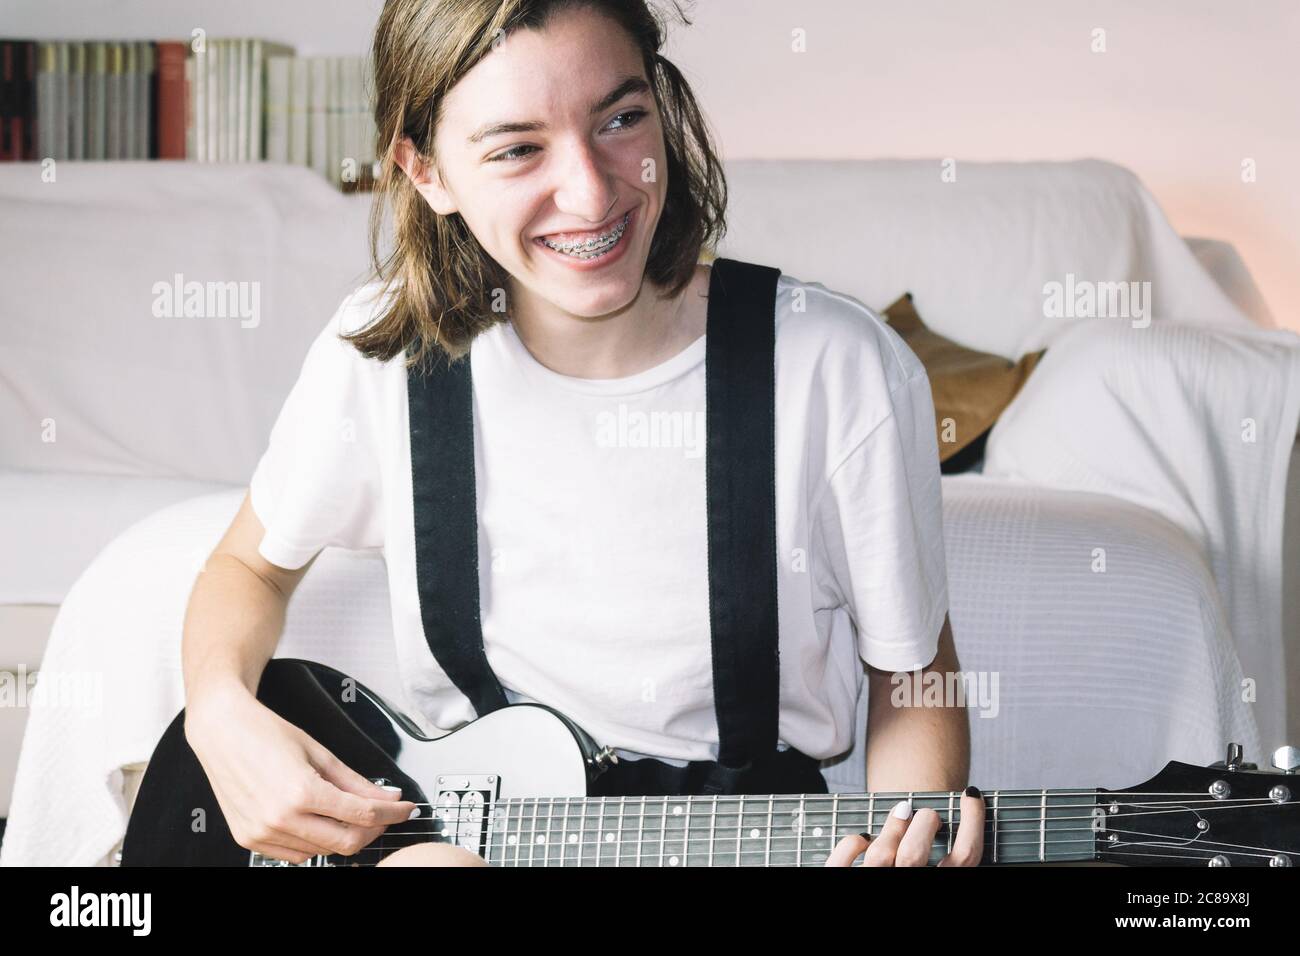 Ein Teenage-Mädchen in Zahnspangen, das mit einem Lächeln Gitarre spielt. Konzept des Lächelns beim Lernen. Stockfoto